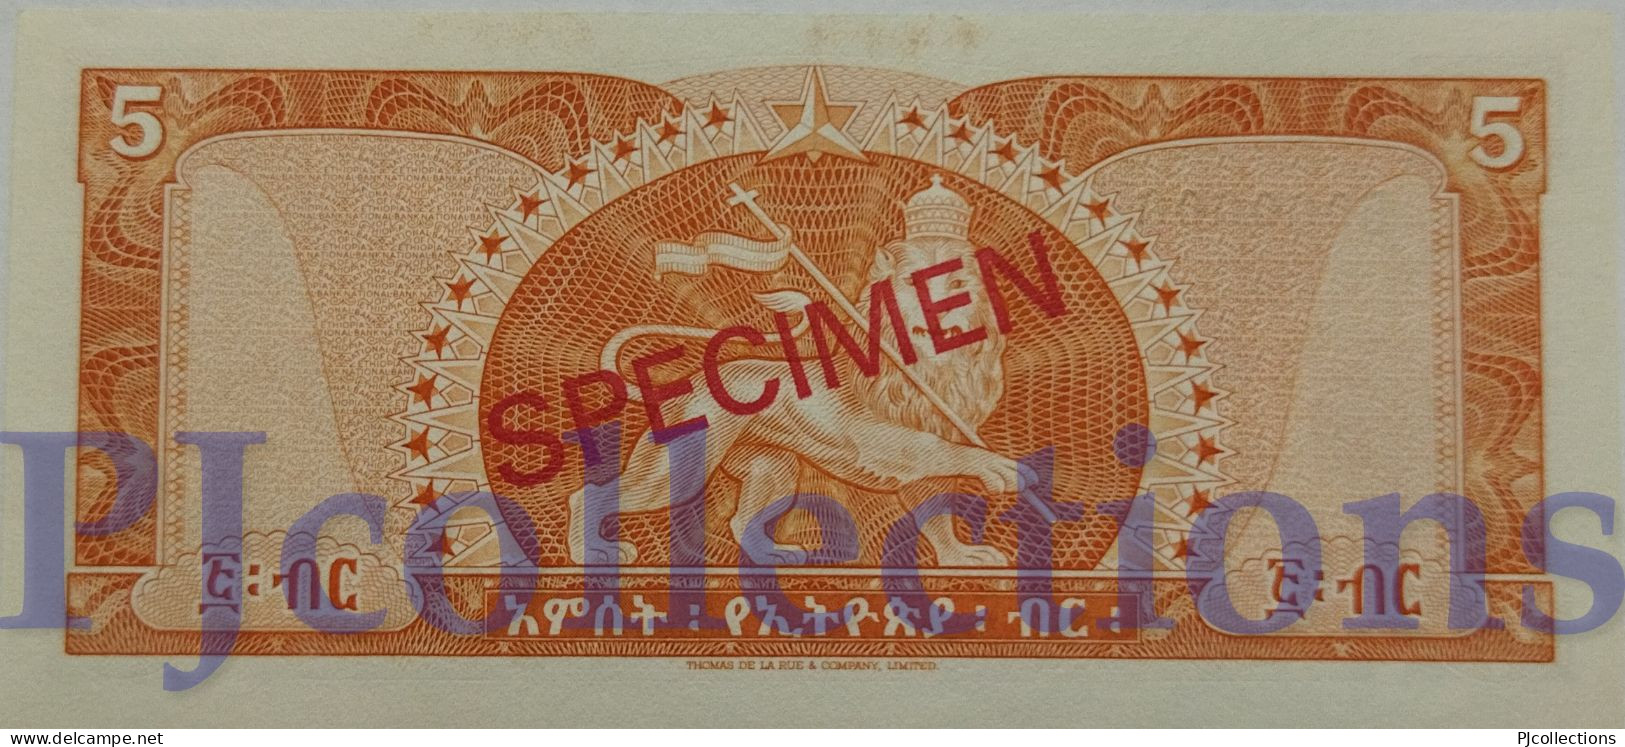 ETHIOPIA 5 DOLLARS 1966 PICK 26s SPECIMEN UNC RARE - Ethiopië